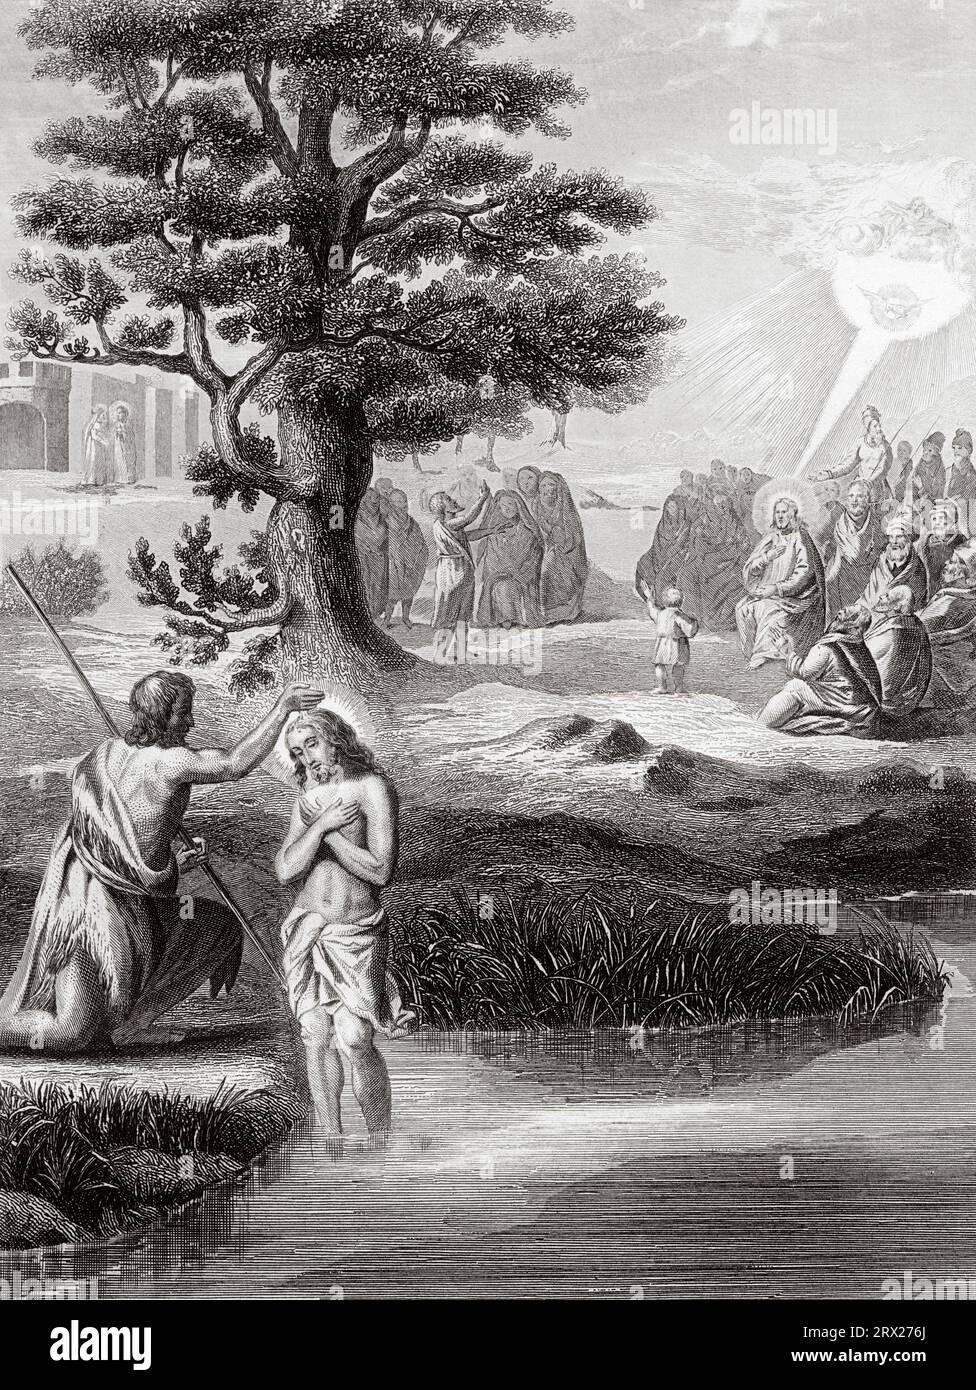 Gesù è battezzato sulle rive del fiume Giordano da San Giovanni Battista. Illustrazione per la vita di nostro Signore Gesù Cristo scritta dai quattro evangelisti, 1853 Foto Stock